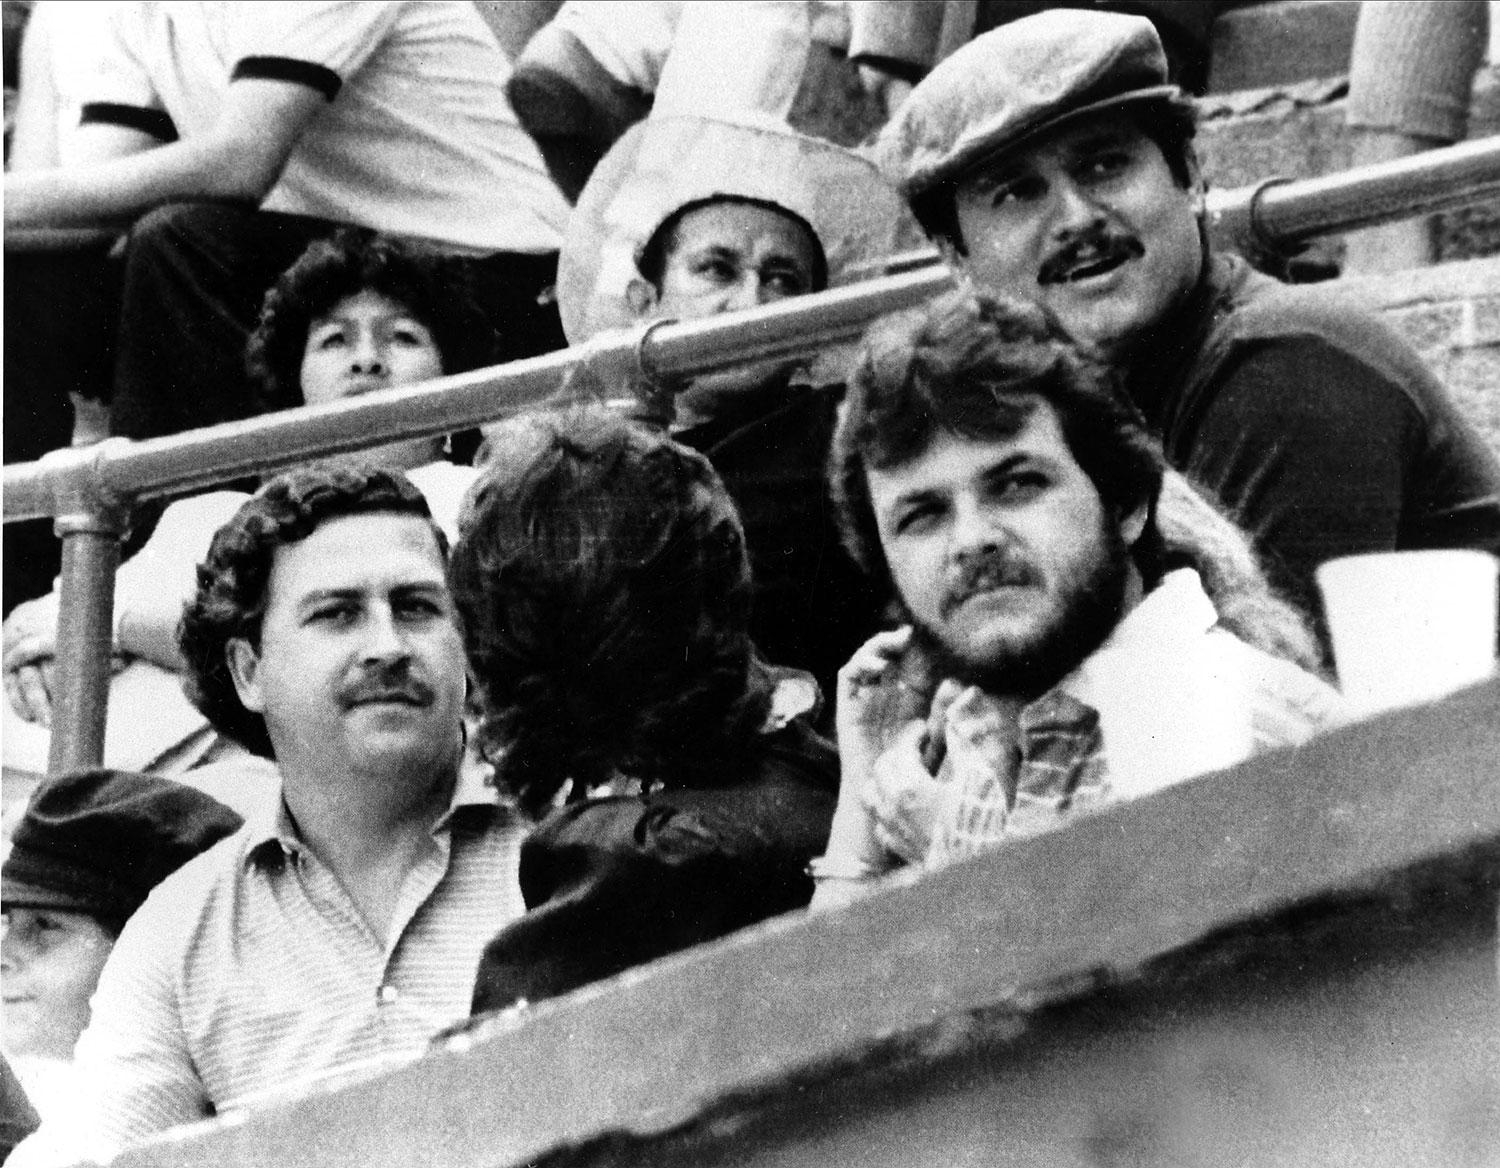 Pablo Escobar och Jorga Luis Ochoa (i keps), de två ledarna för Medellins kokainkartell, vid en tjurfäktning 1984.